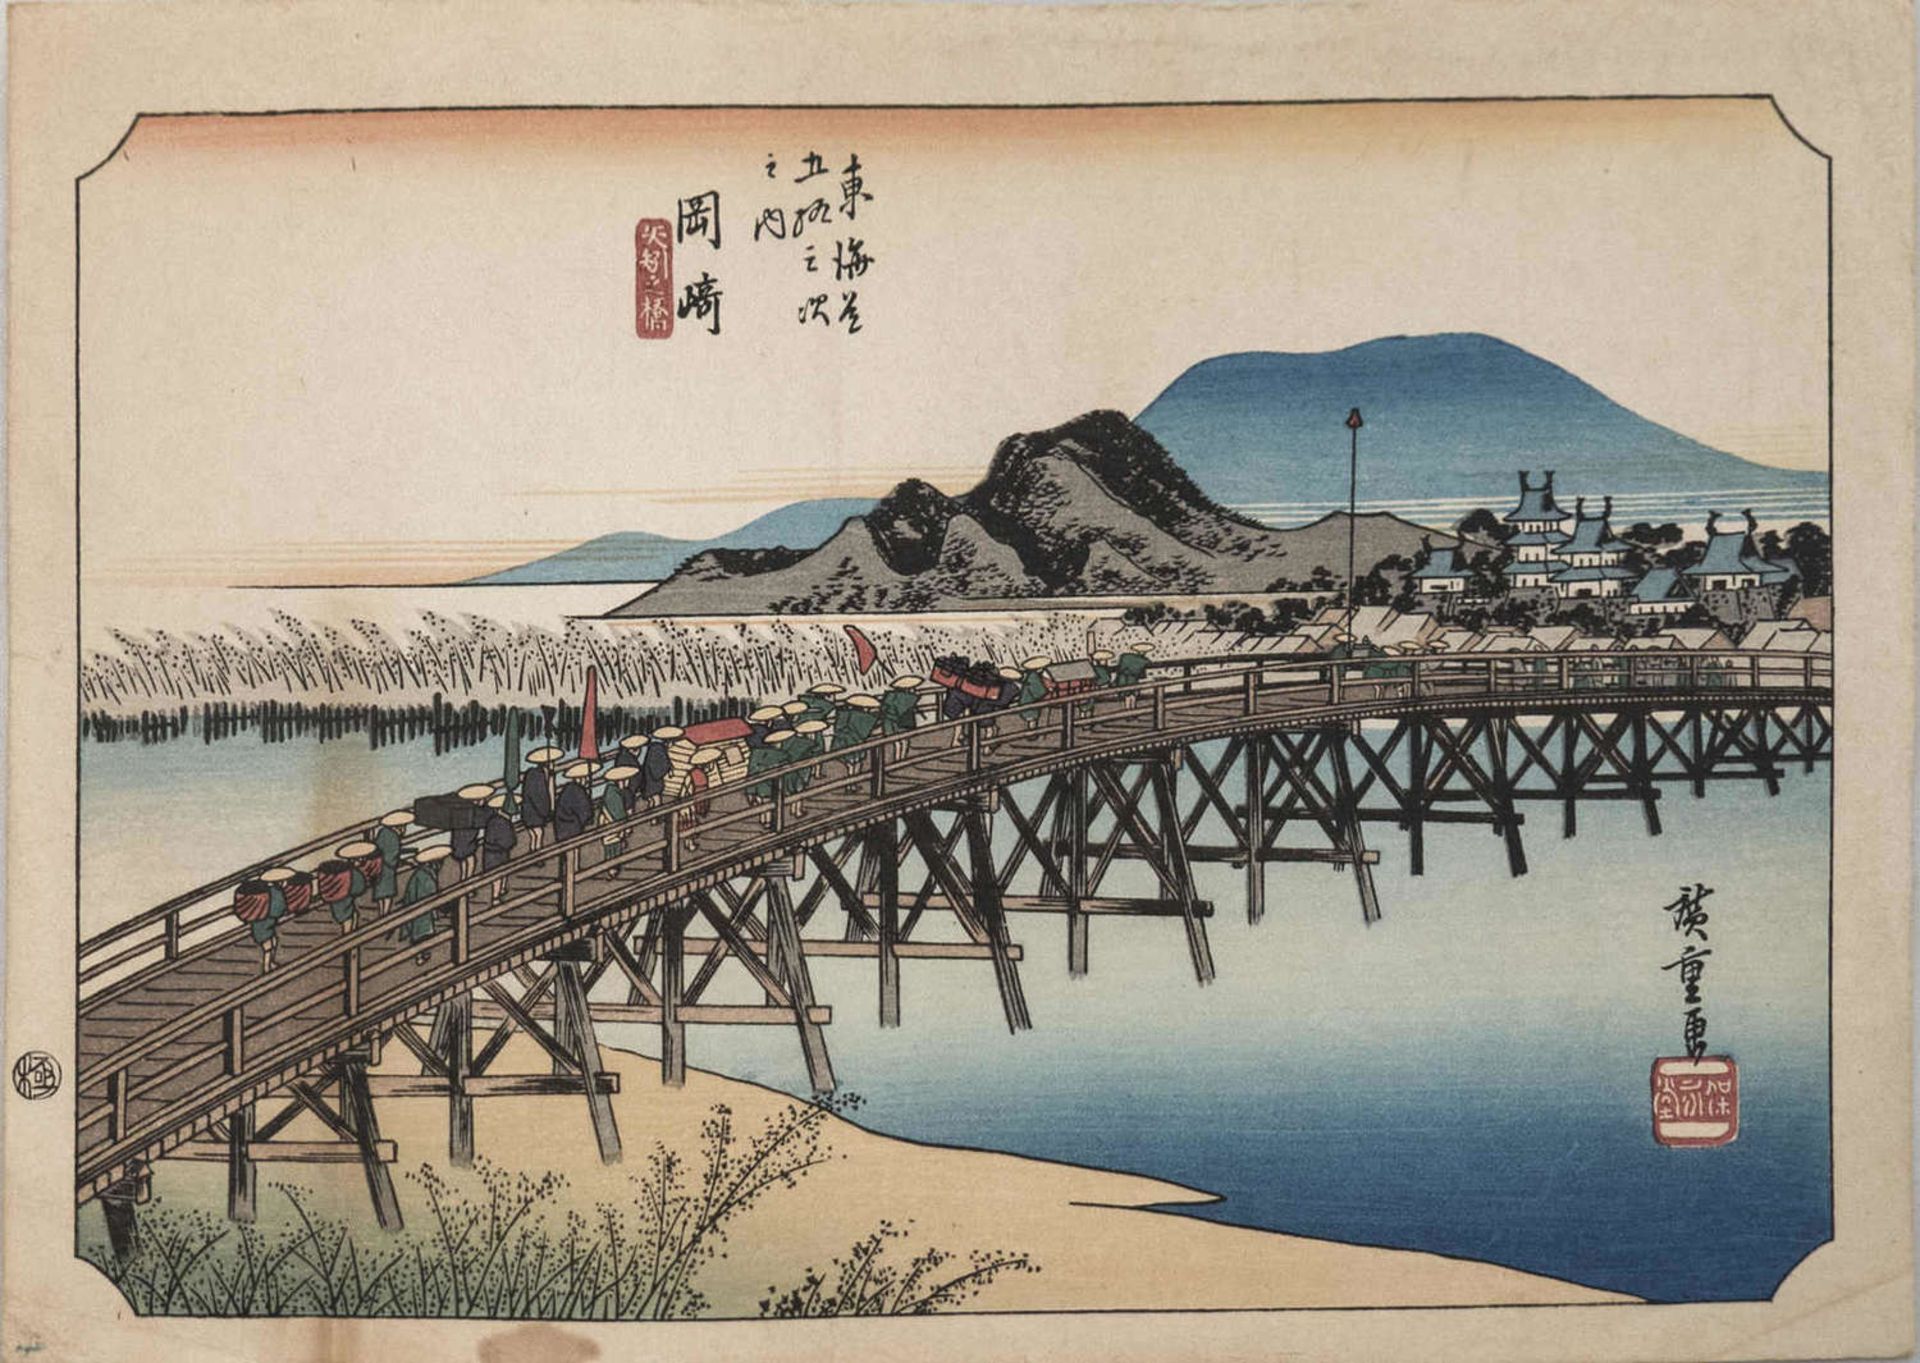 Chinesische Tuschezeichnung "Brücke über Fluss", Blütenpapier, mehrfache Künstler - Stempel.